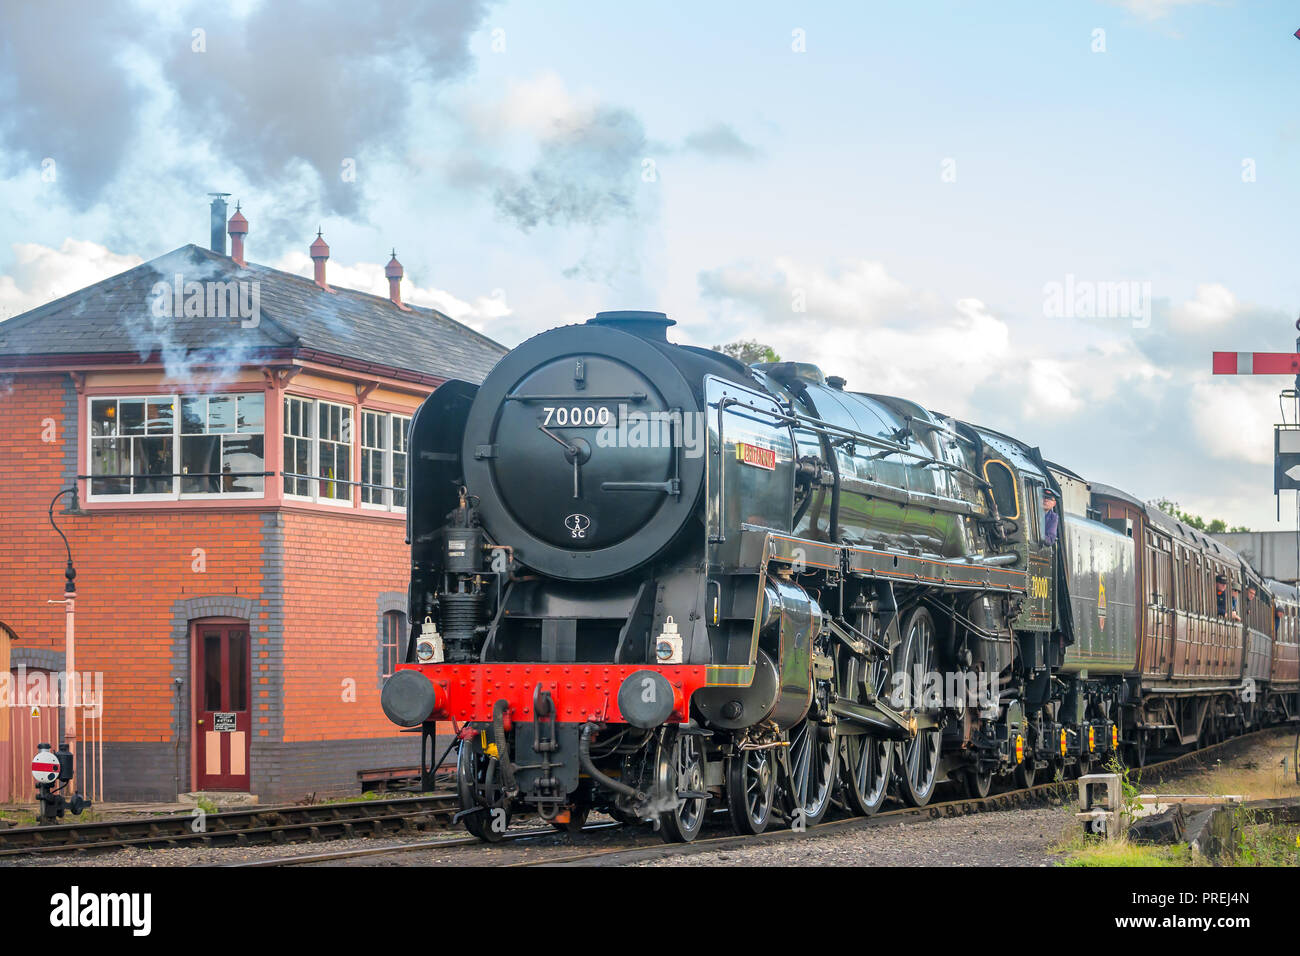 Erhaltene BR-Standard Klasse 7 Dampflokomotive, das kolossale Britannia Nr. 70000 bei der SVR Kidderminster Bahnhof ankommen, Herbst Dampf Gala, 2018. Stockfoto